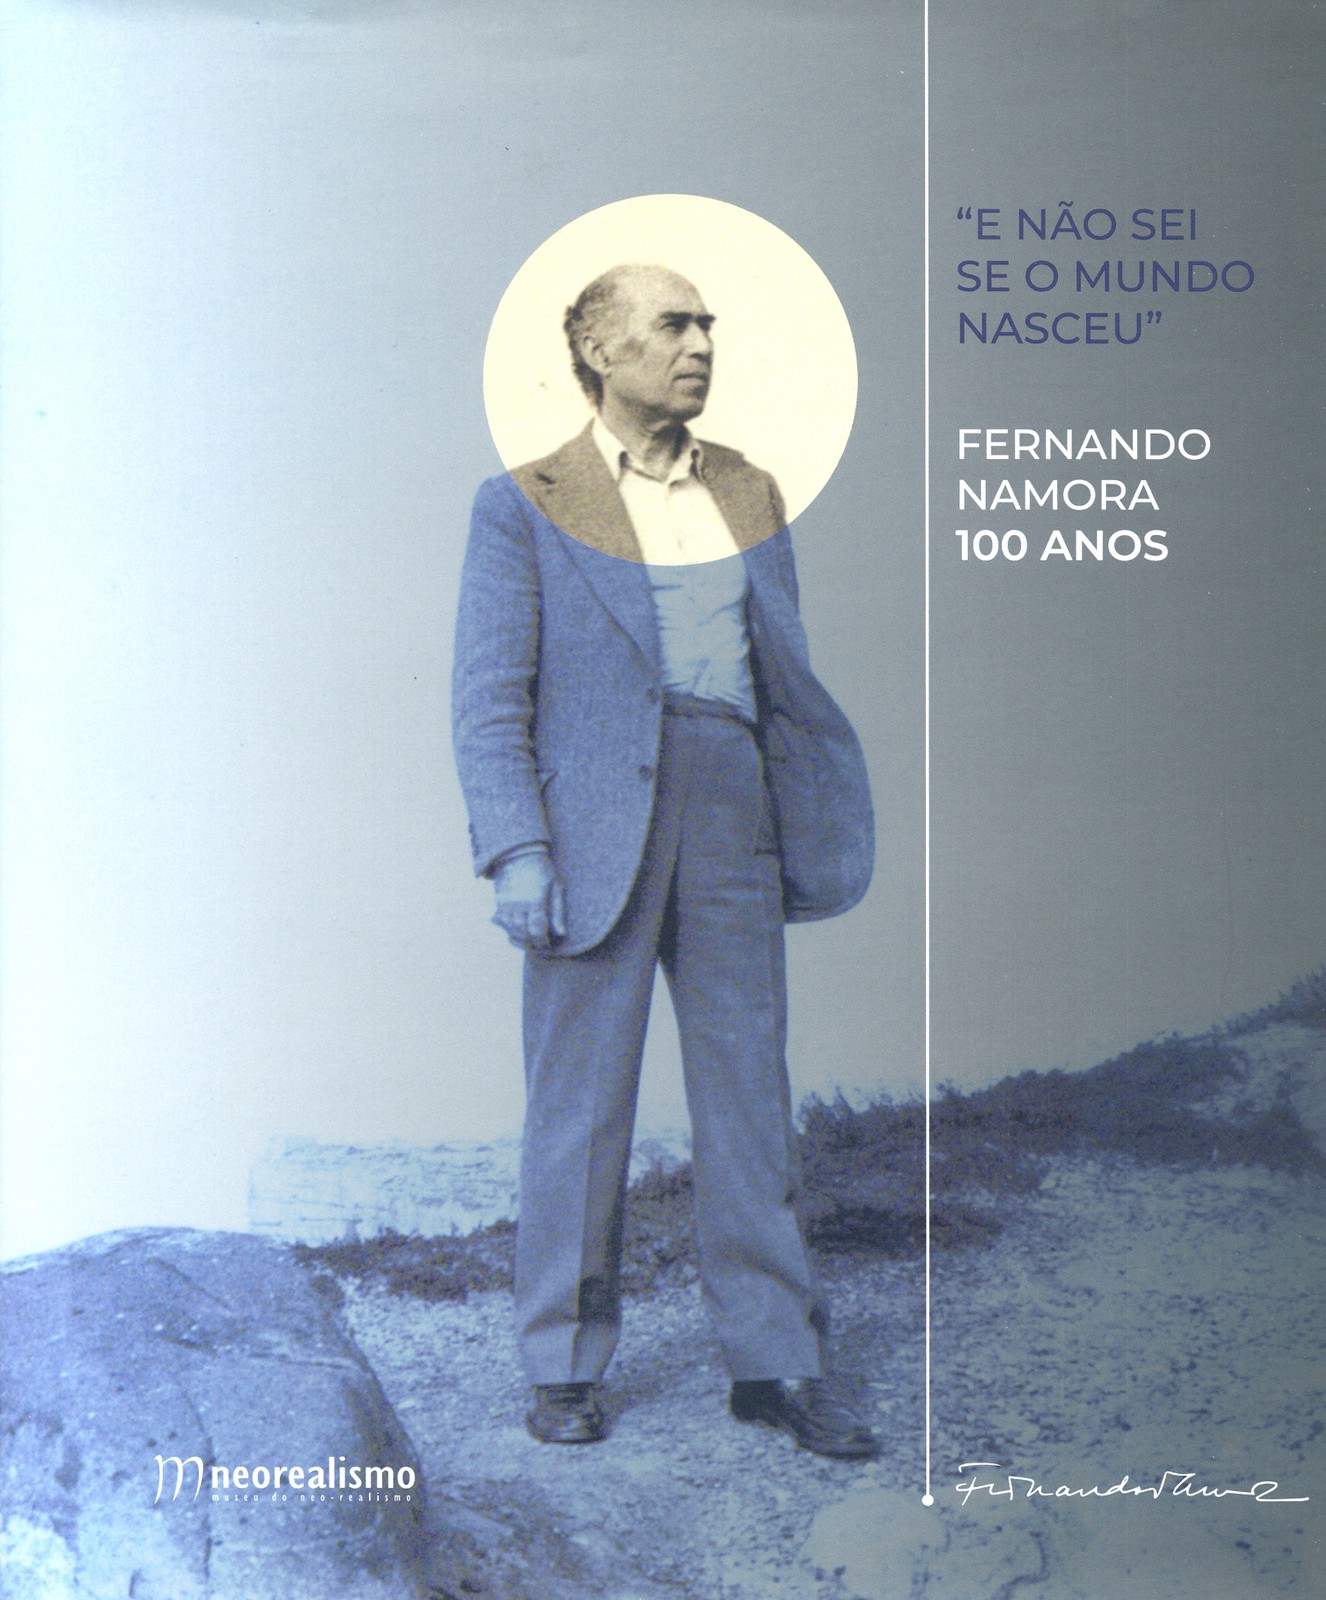 Catálogo da Exposição E Não Sei se o Mundo Nasceu – Fernando Namora 100 anos